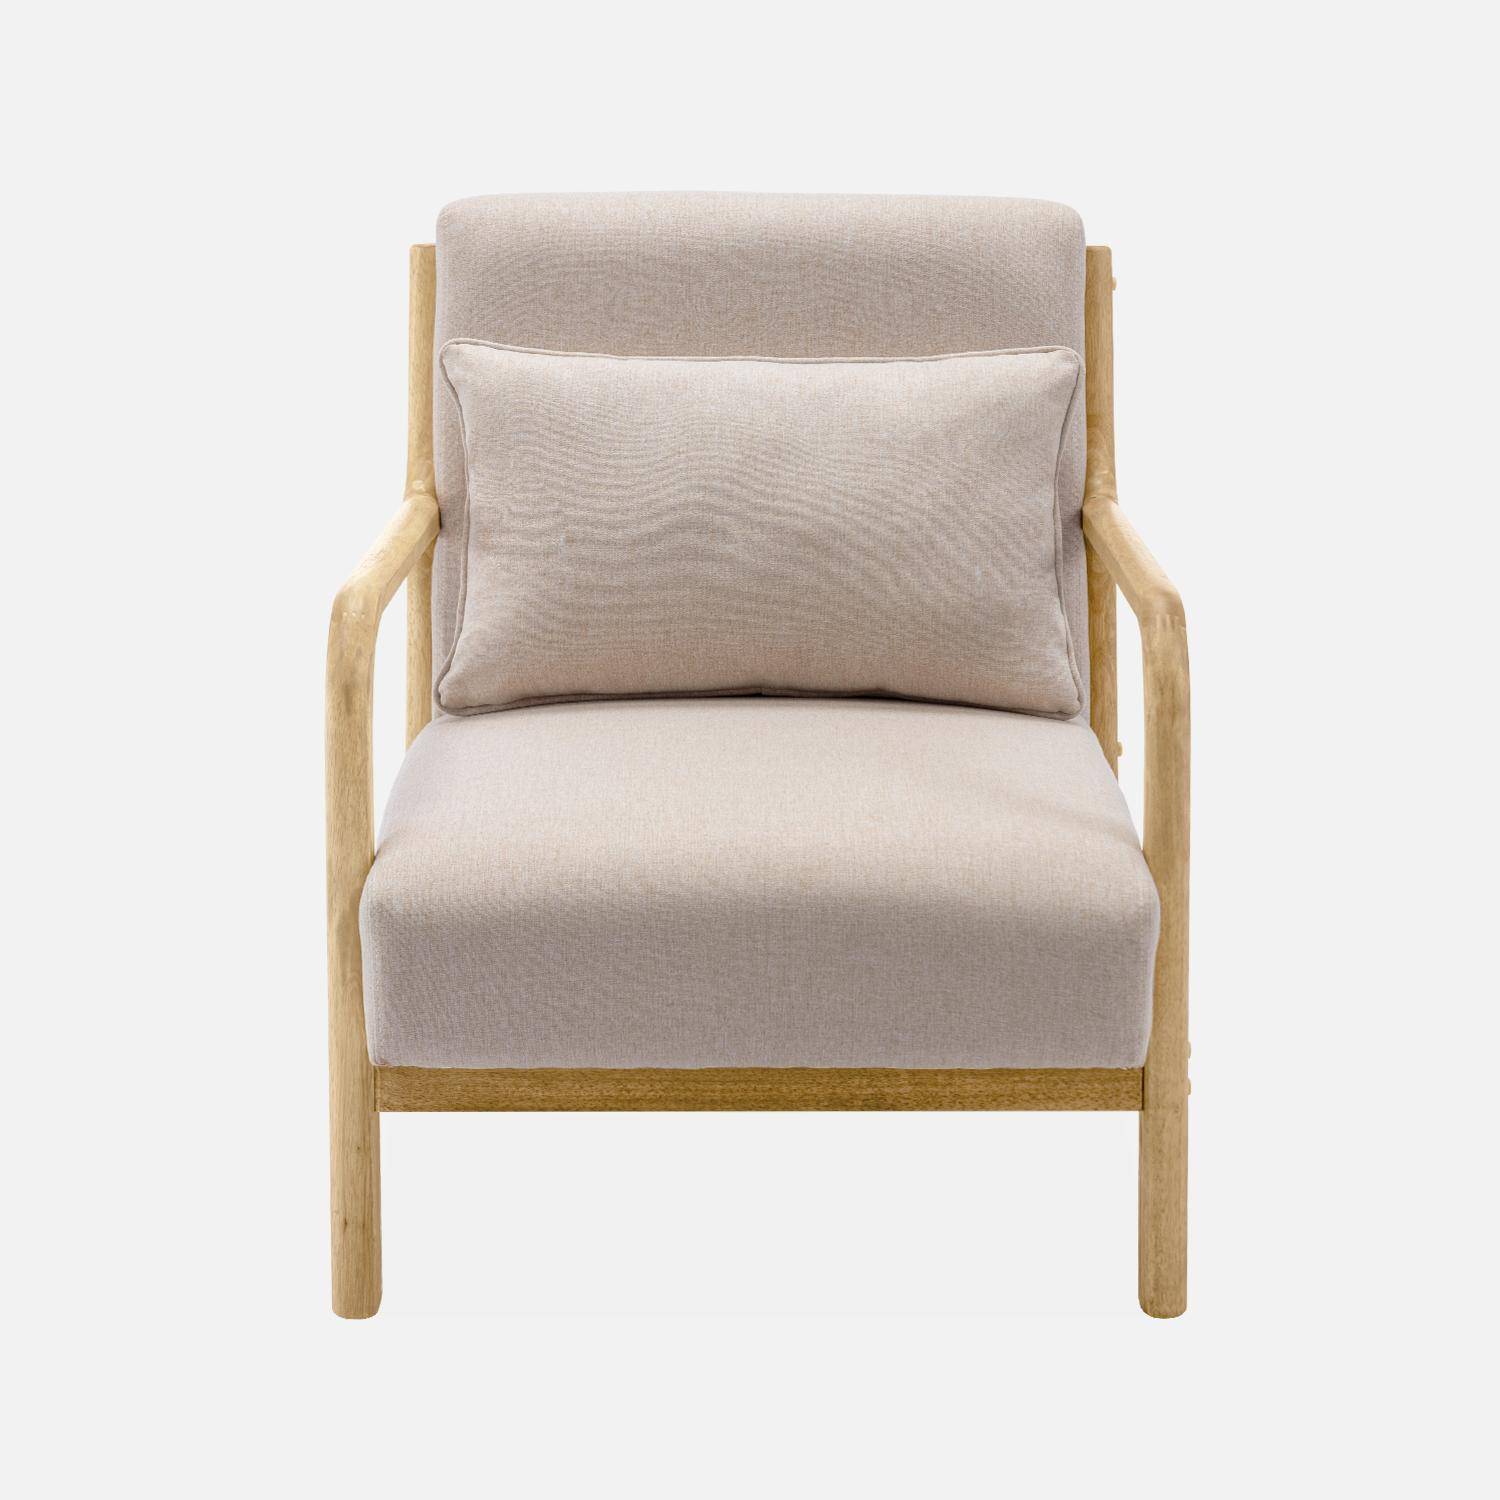 Poltrona de design em madeira e tecido, 1 assento reto fixo, pernas em bússola escandinavas, estrutura em madeira maciça, assento bege confortável Photo5